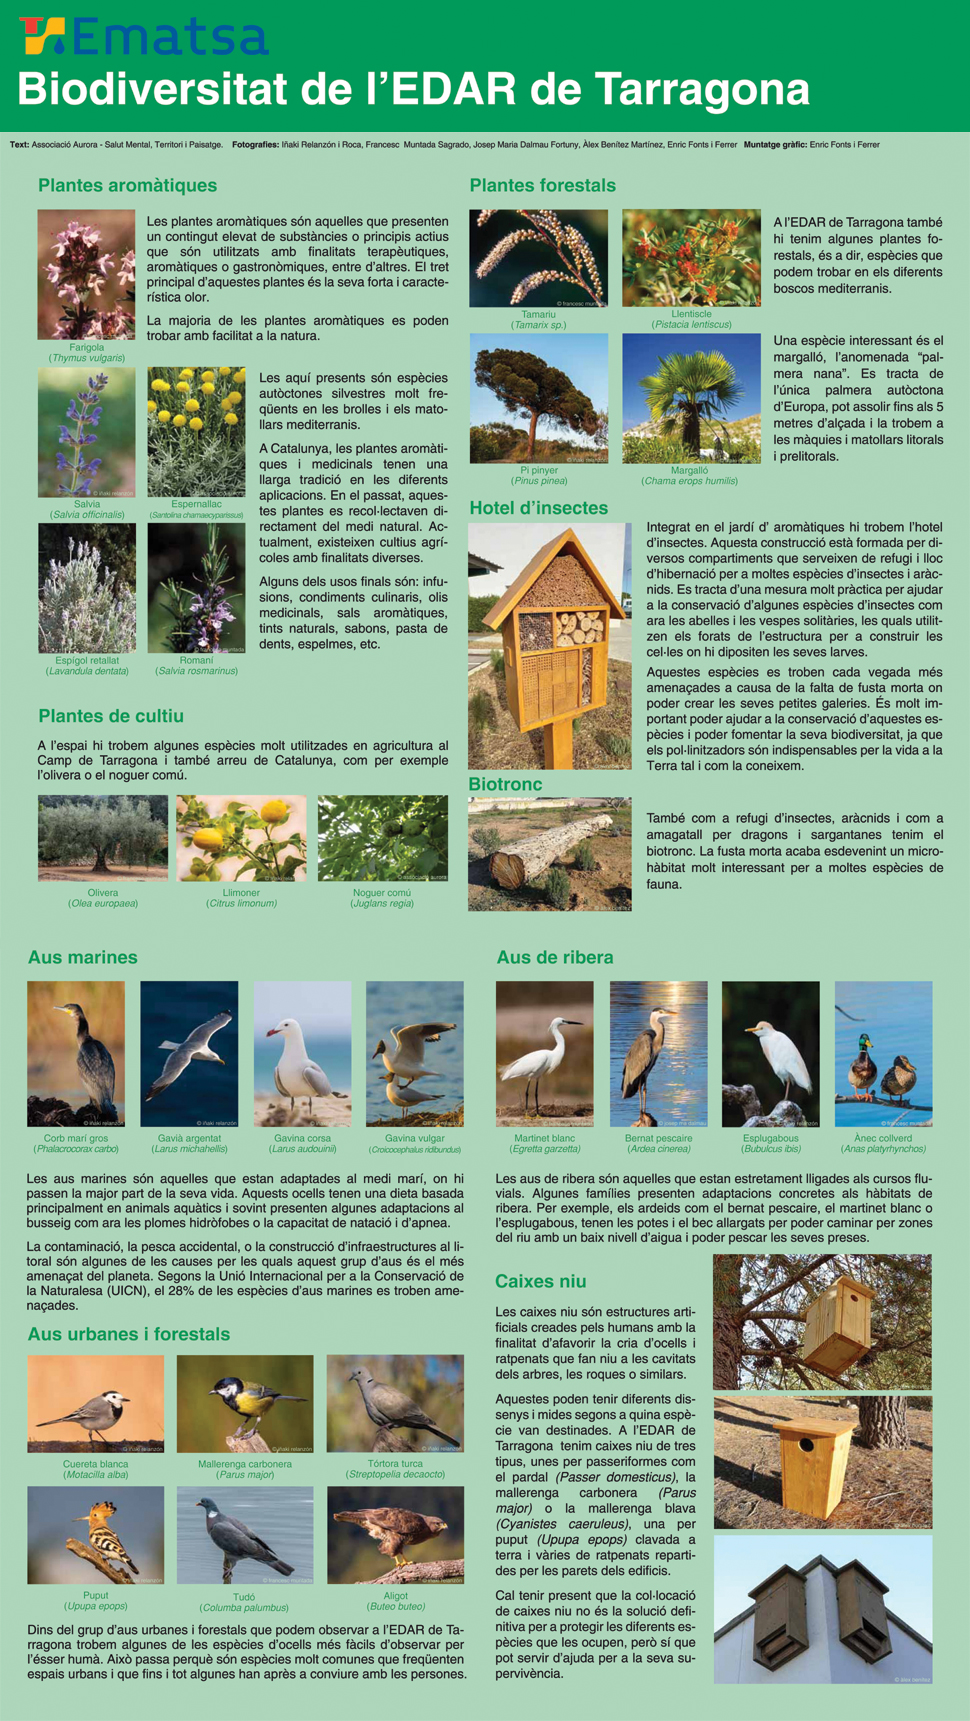 Díptico de la Biodiversidad en la EDAR de Tarragona